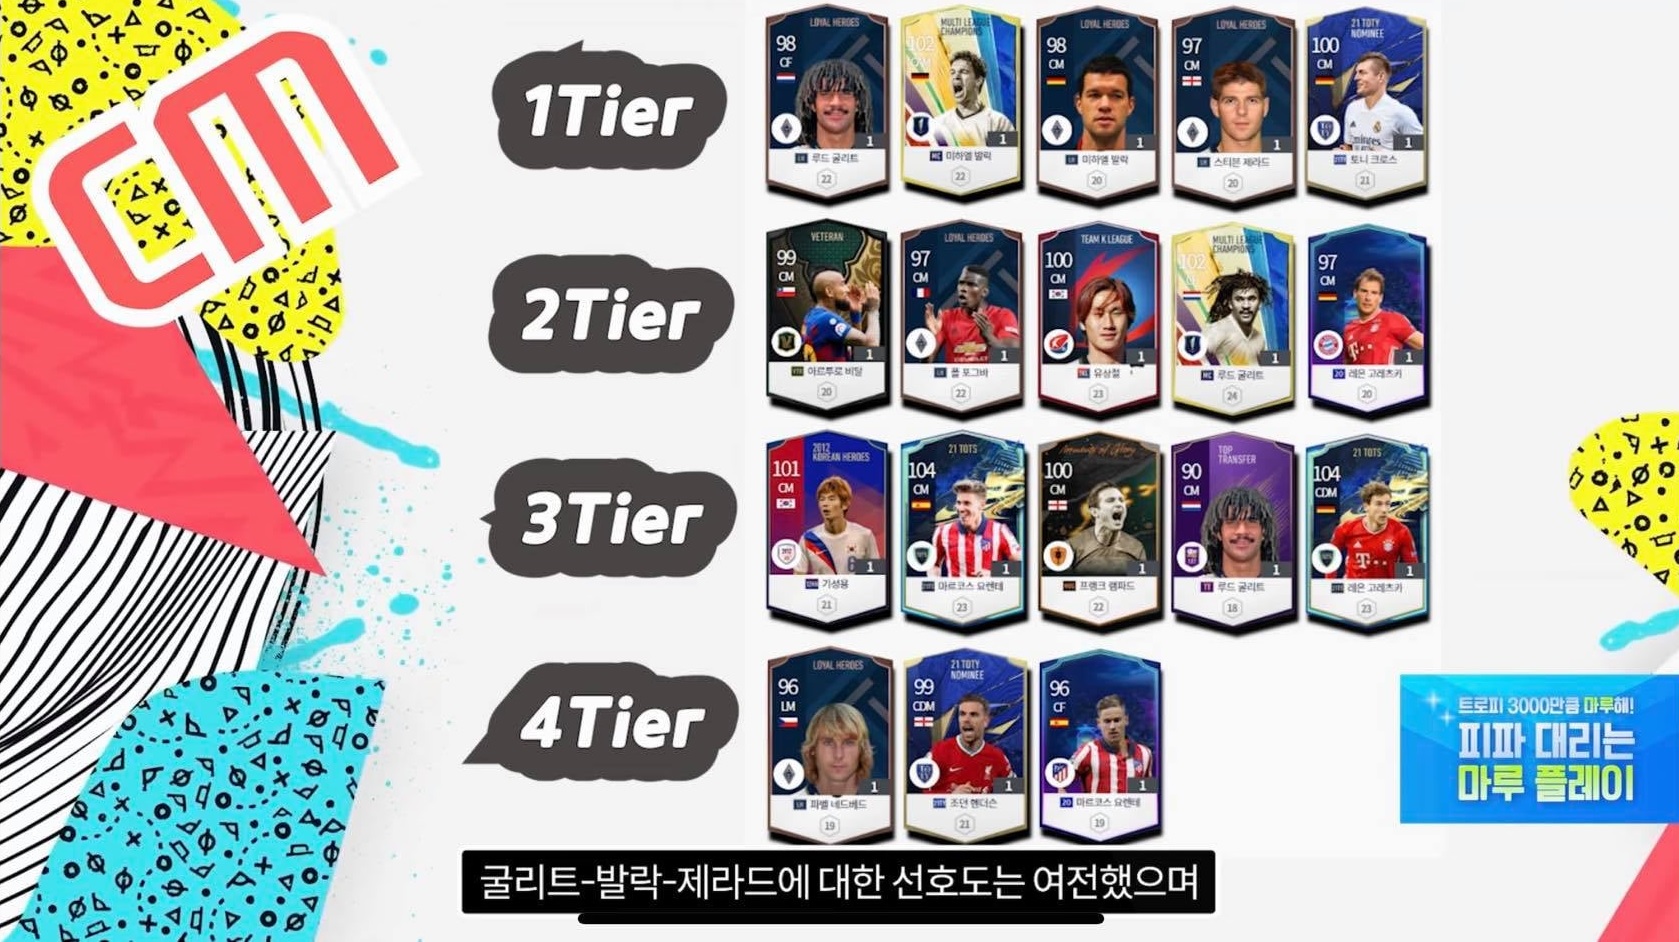 FIFA ONLINE 4 | Bảng tổng hợp xếp hạng các cầu thủ được ưu chuộng tại server Hàn Quốc theo từng vị trí